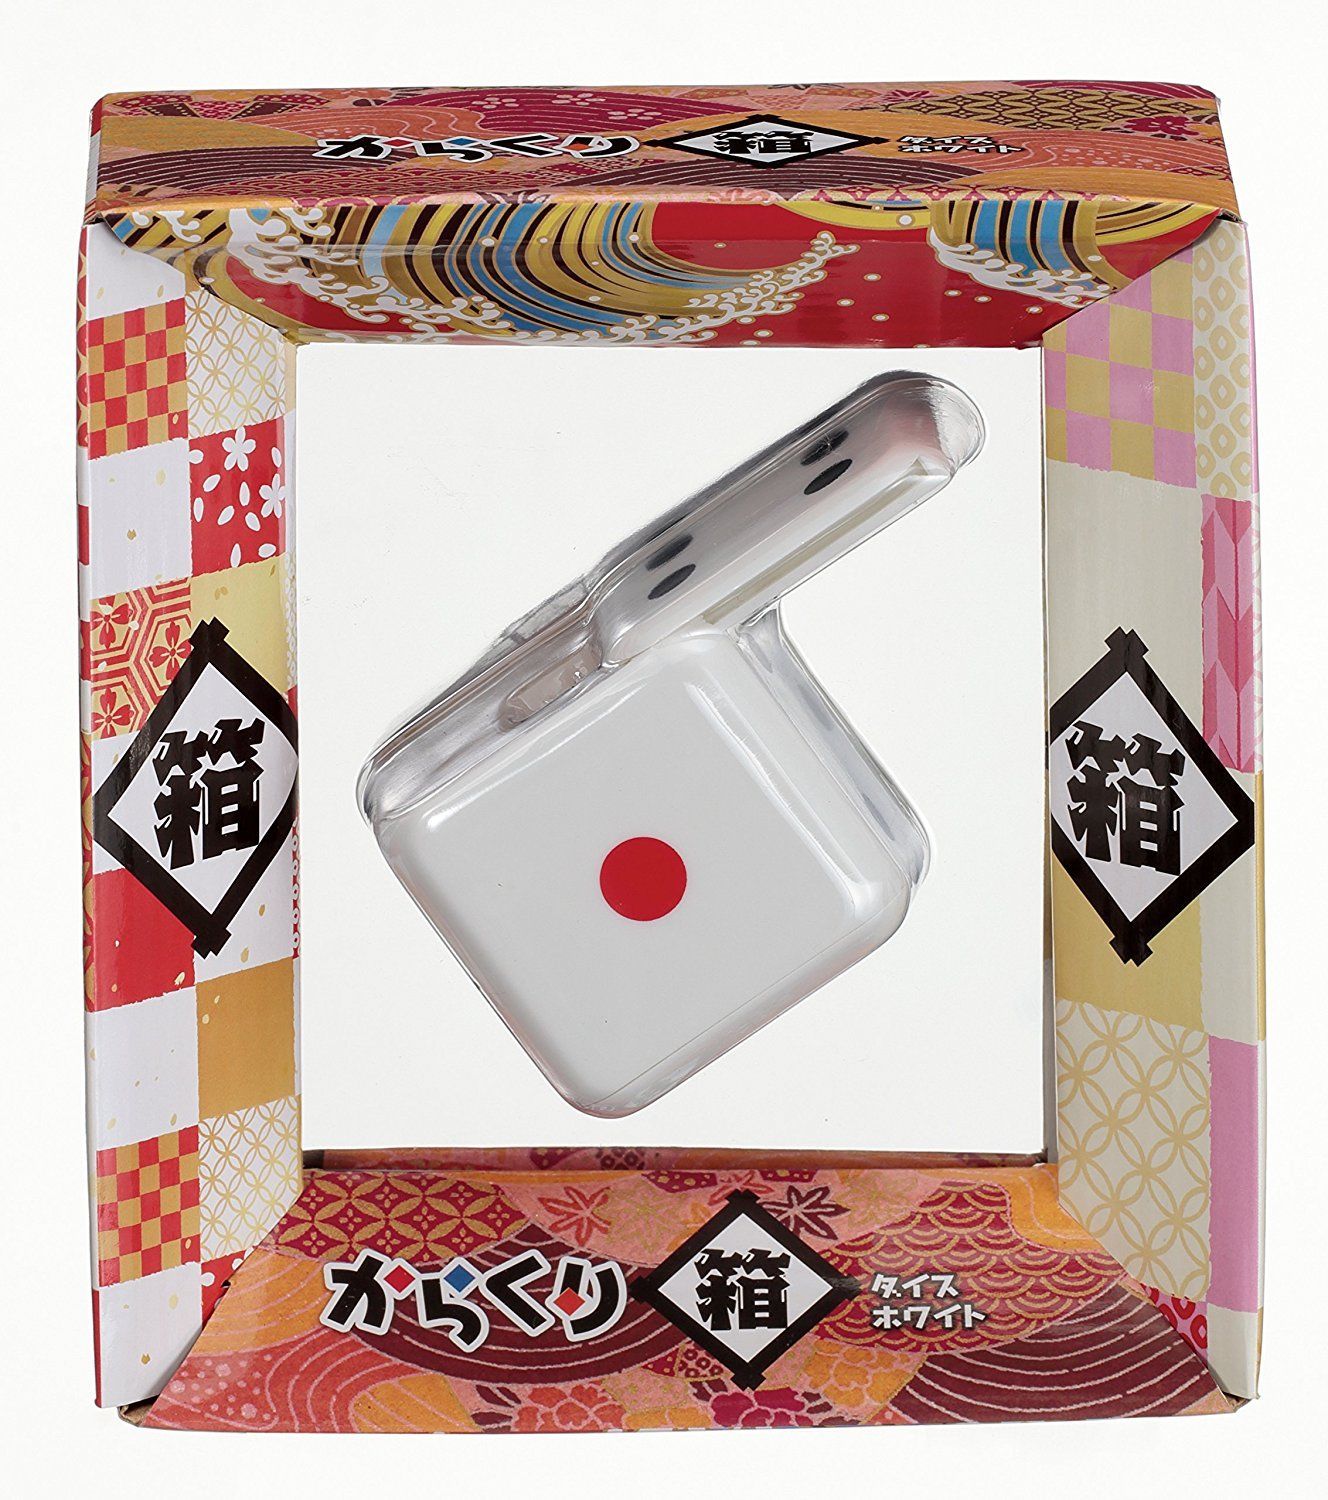 Trick box by hanayama karukari